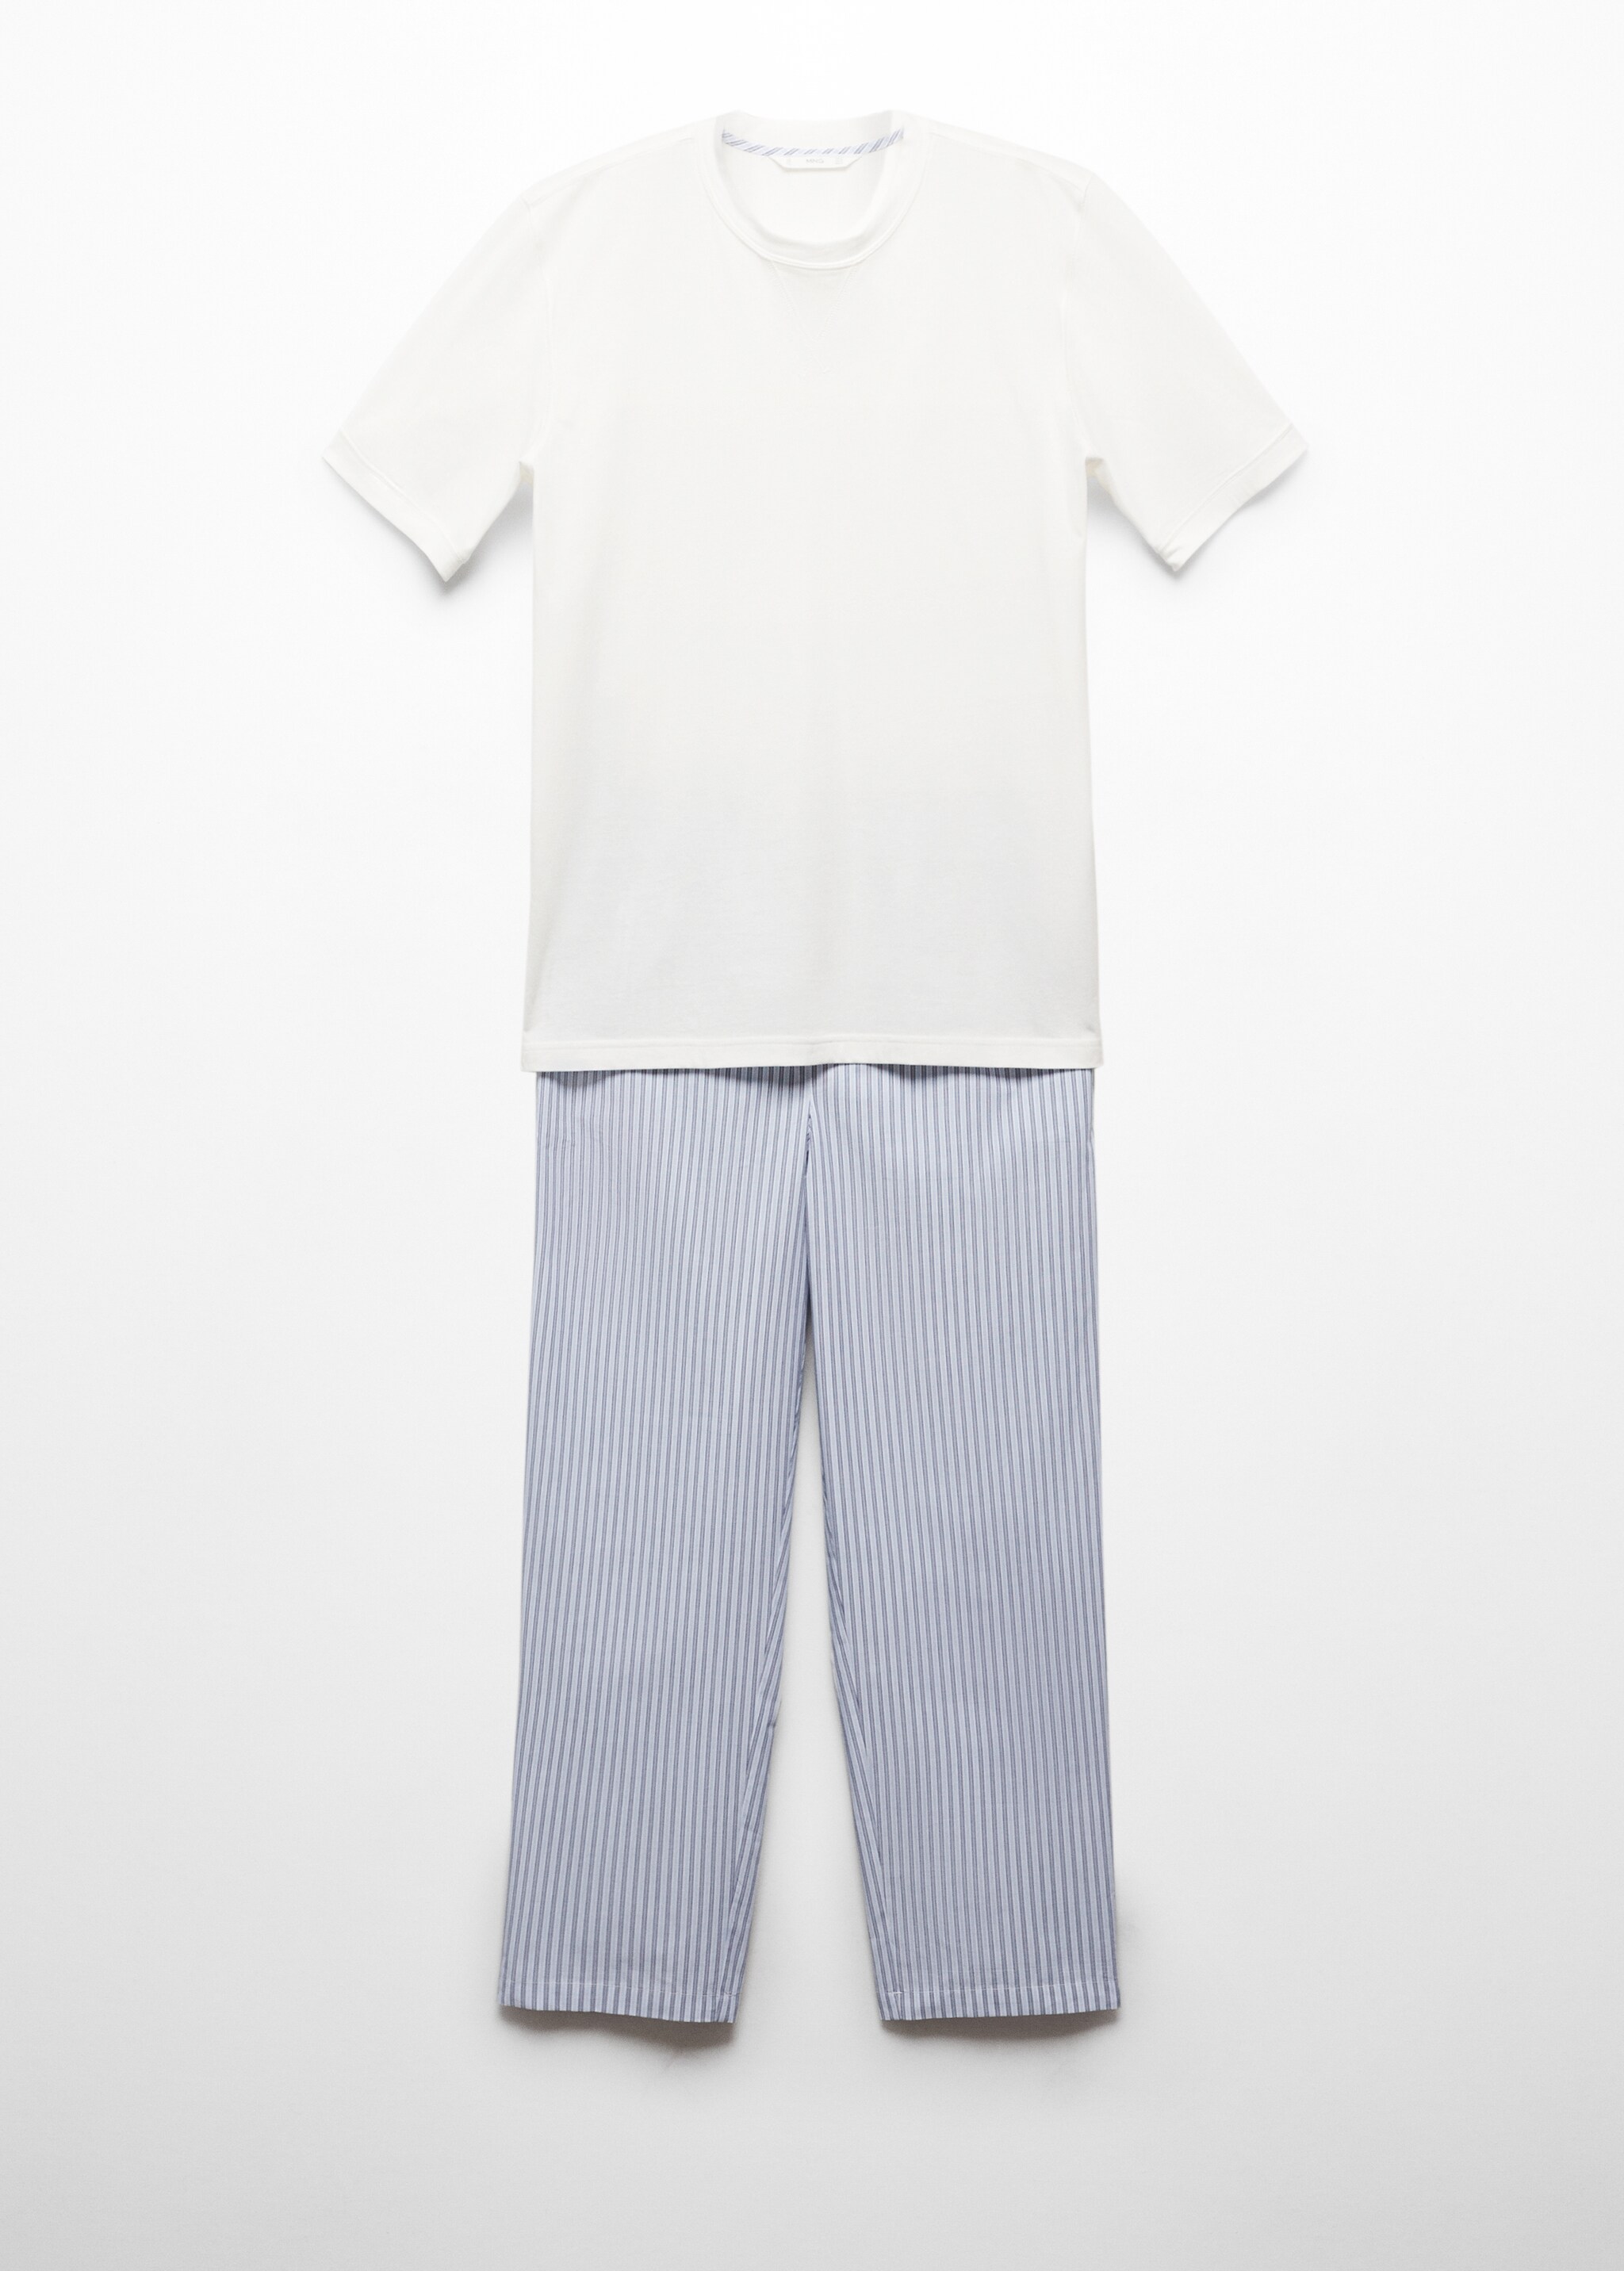 Pack pijama algodón estampado - Artículo sin modelo